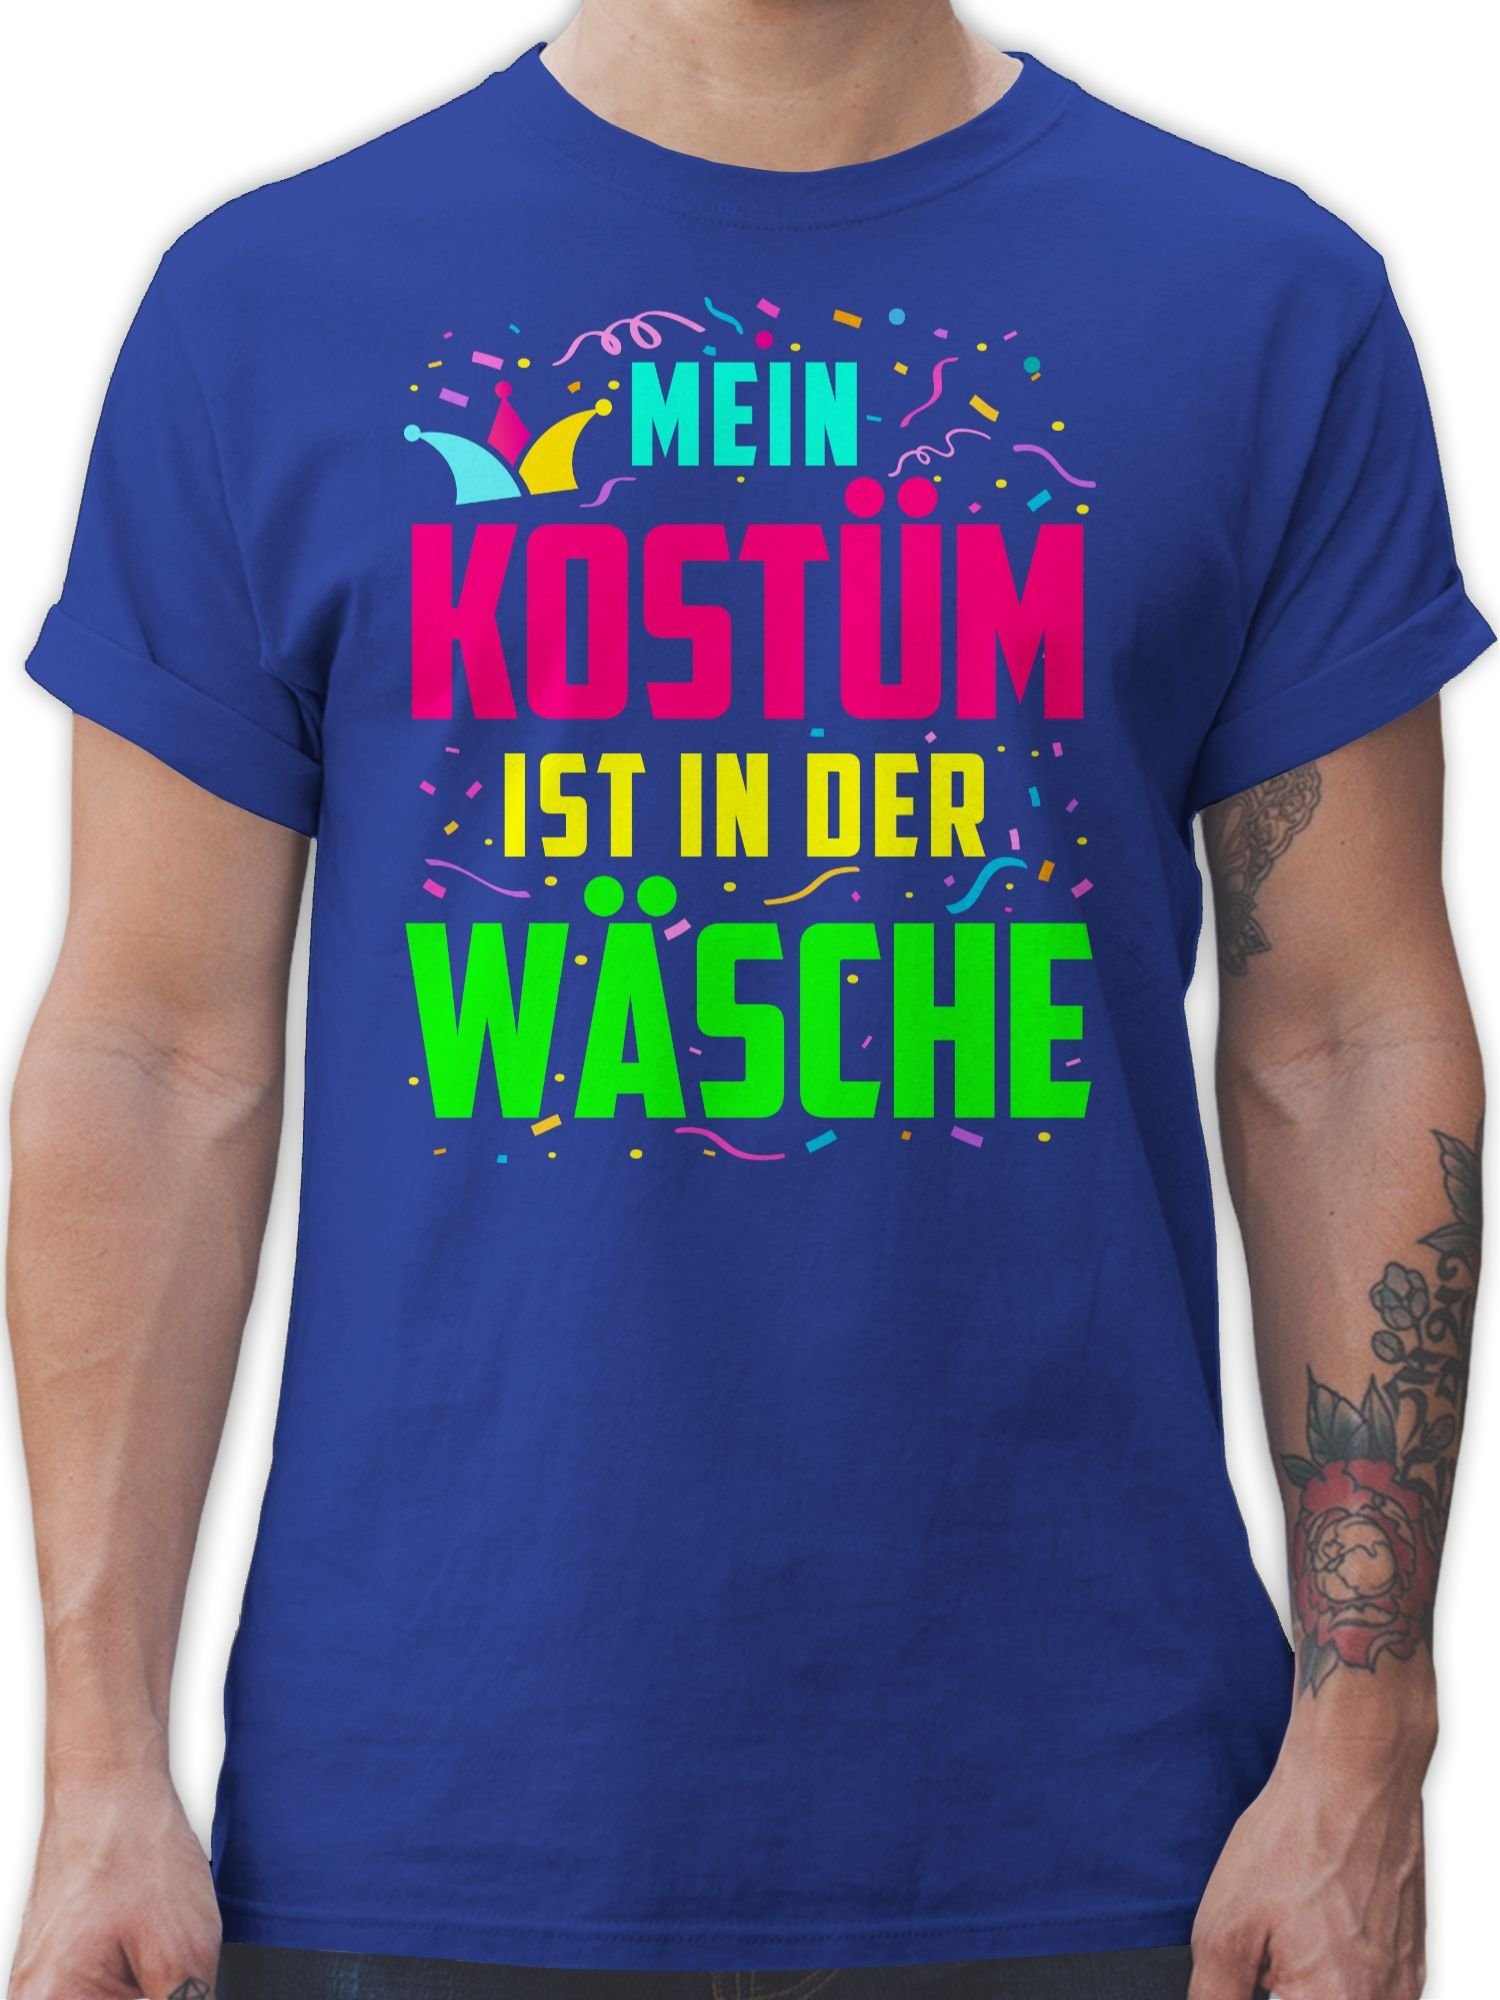 Karneval Wäsche Mein & Shirtracer ist der zu in Fasching Royalblau 03 T-Shirt Kostüm